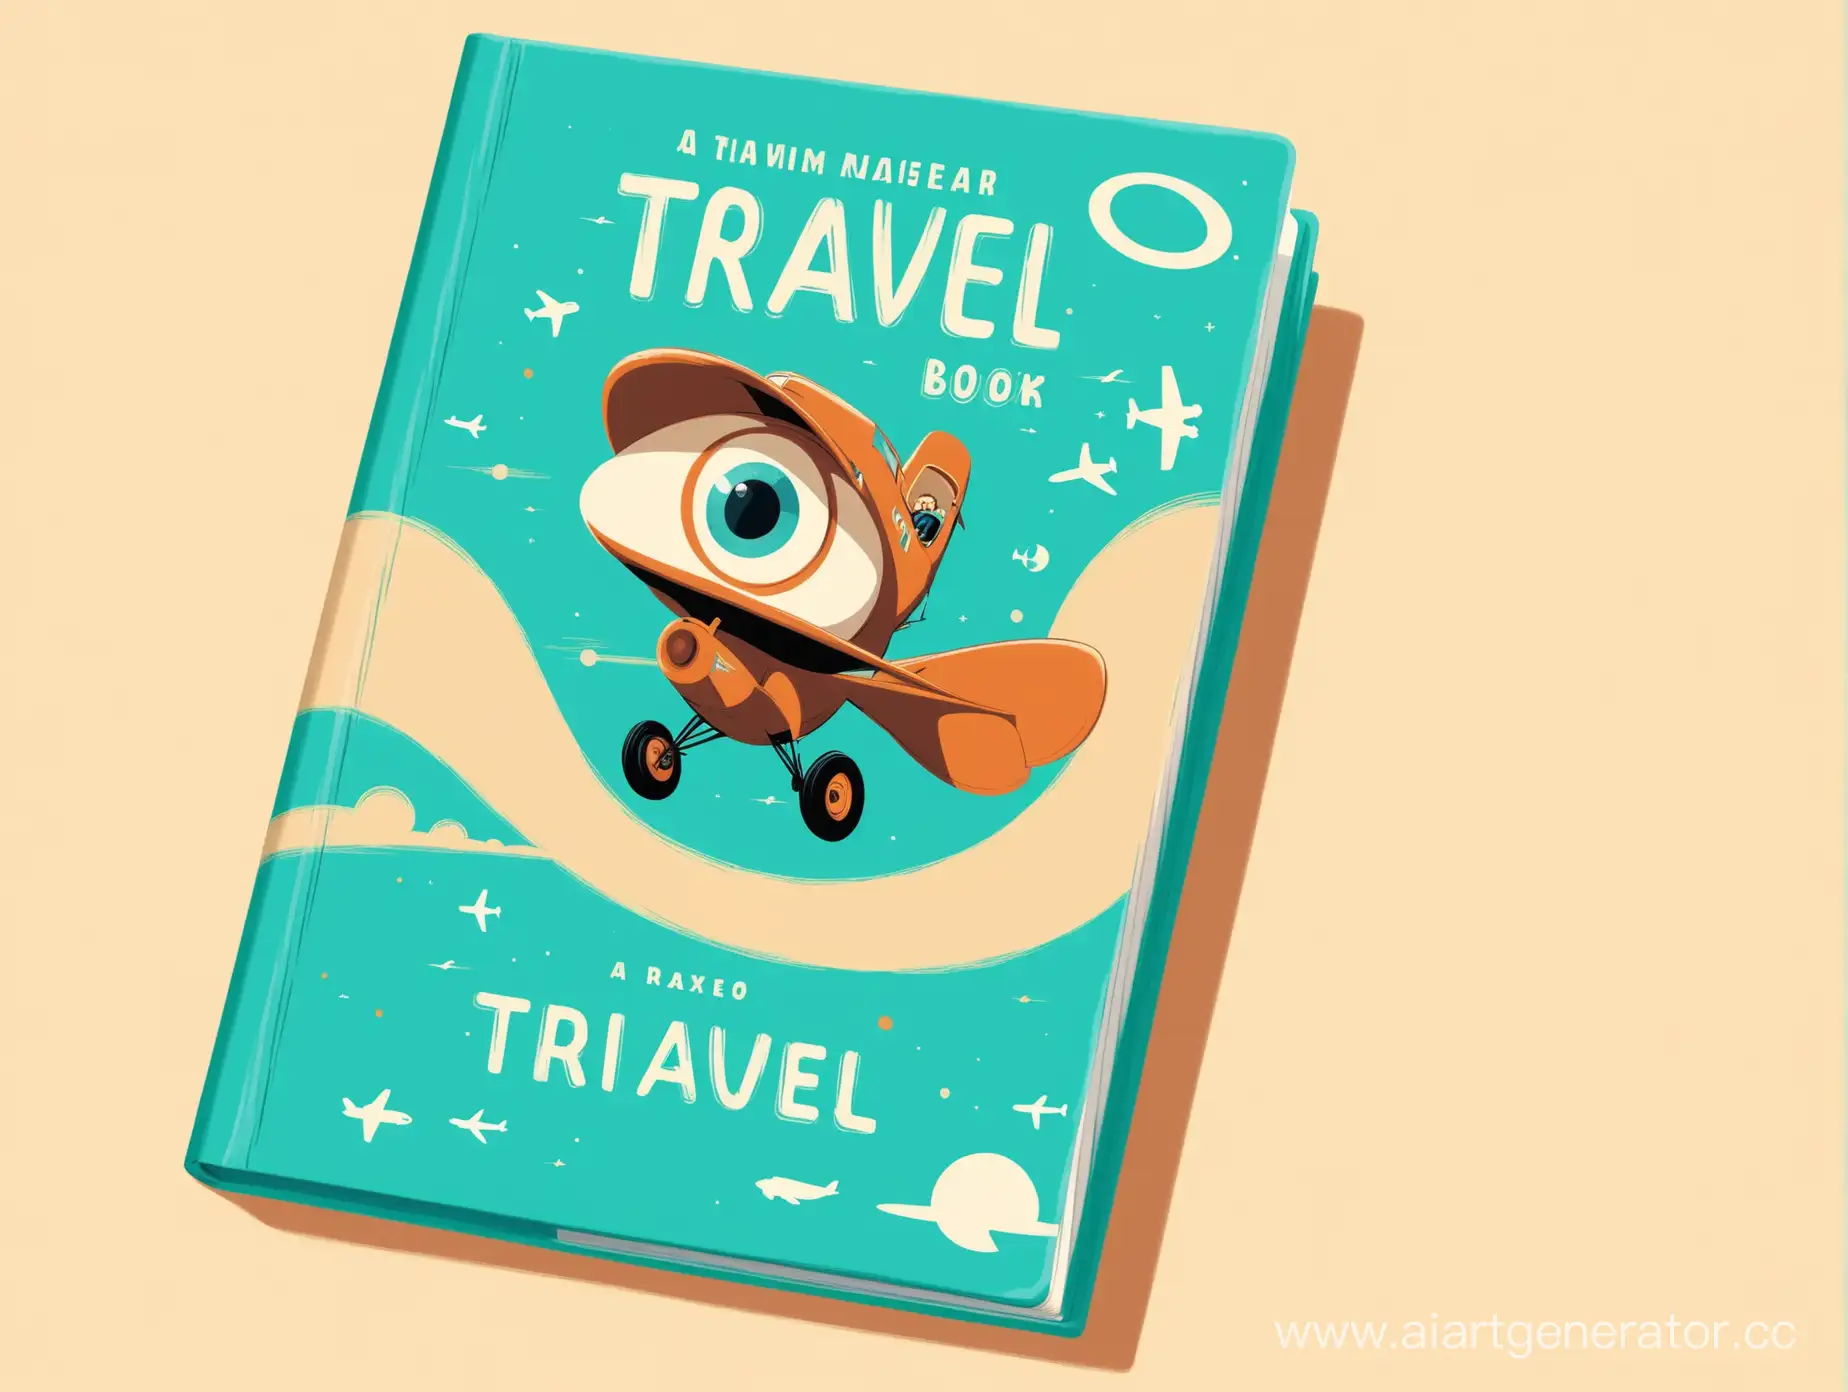 Обложка для книги про путешествия в бирюзвом и бежевом цветах в стиле PIXAR